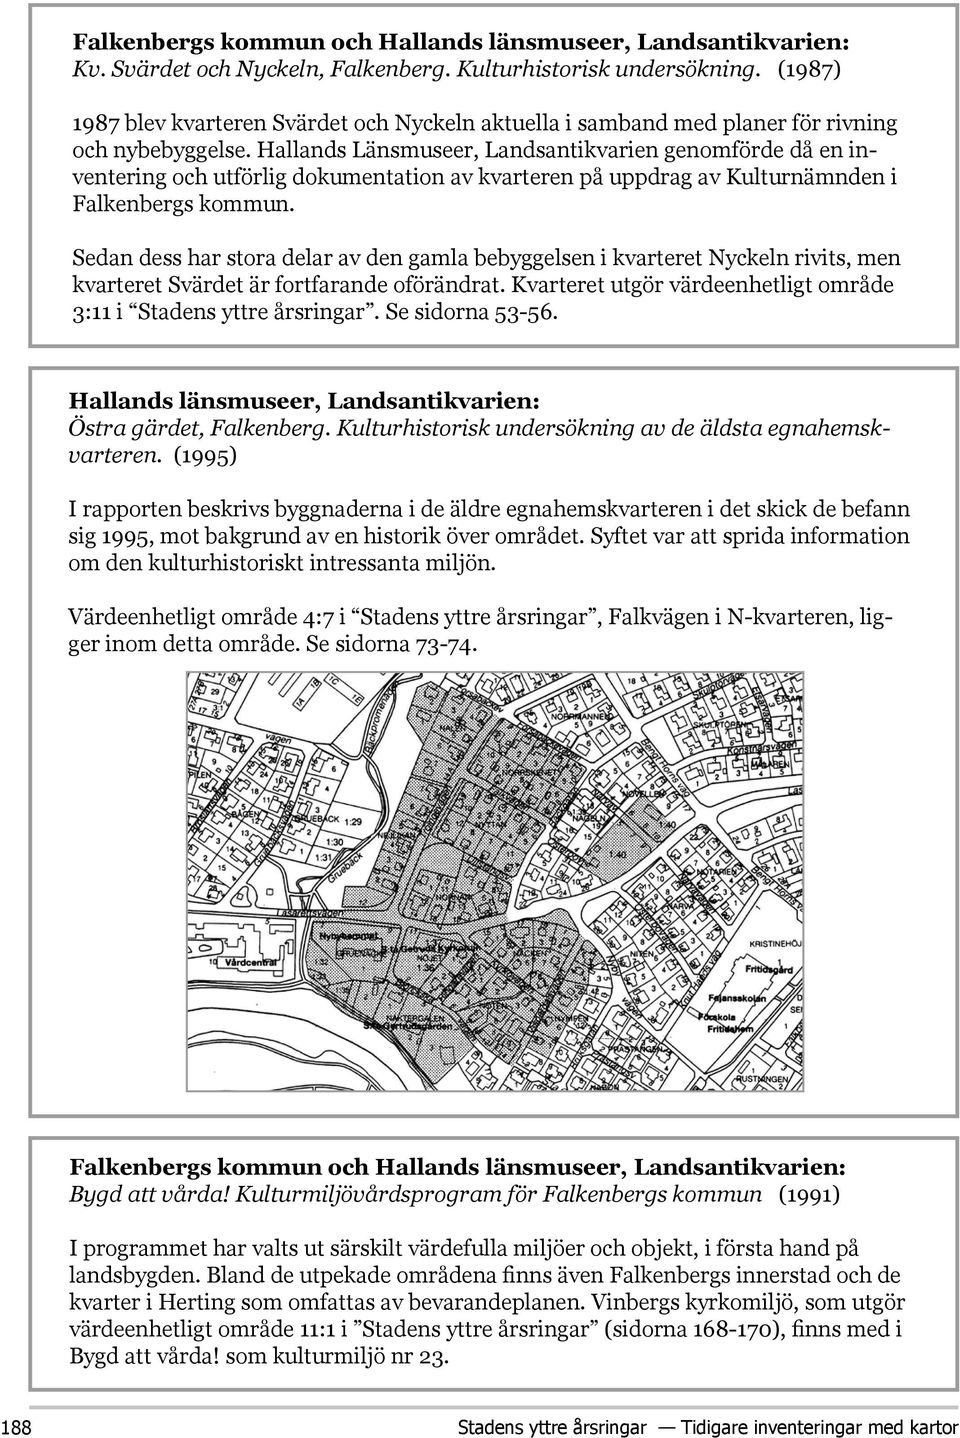 Hallands Länsmuseer, Landsantikvarien genomförde då en inventering och utförlig dokumentation av kvarteren på uppdrag av Kulturnämnden i Falkenbergs kommun.